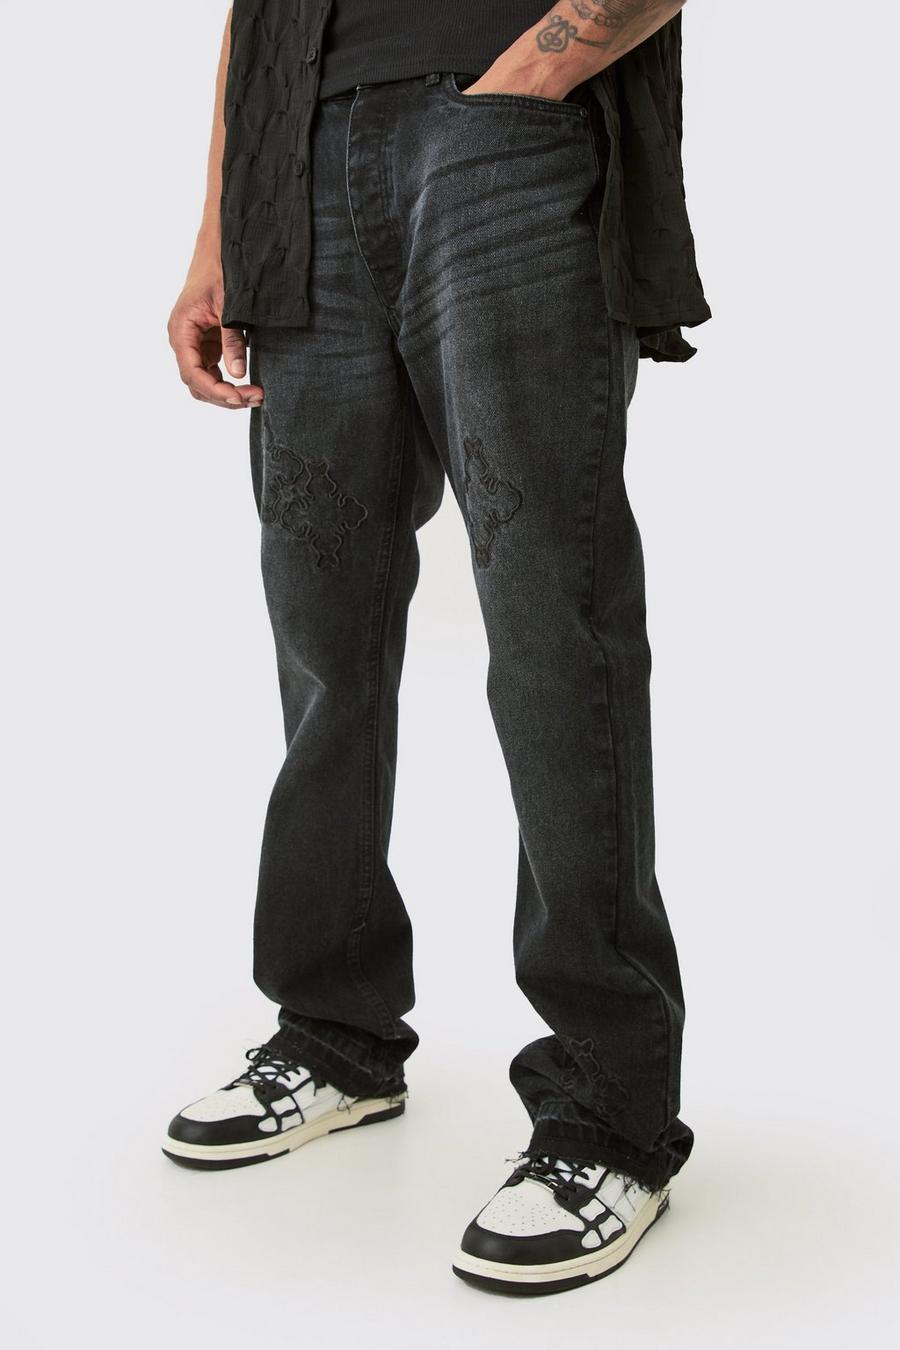 Washed black Tall Jeans i slim fit med korsade band